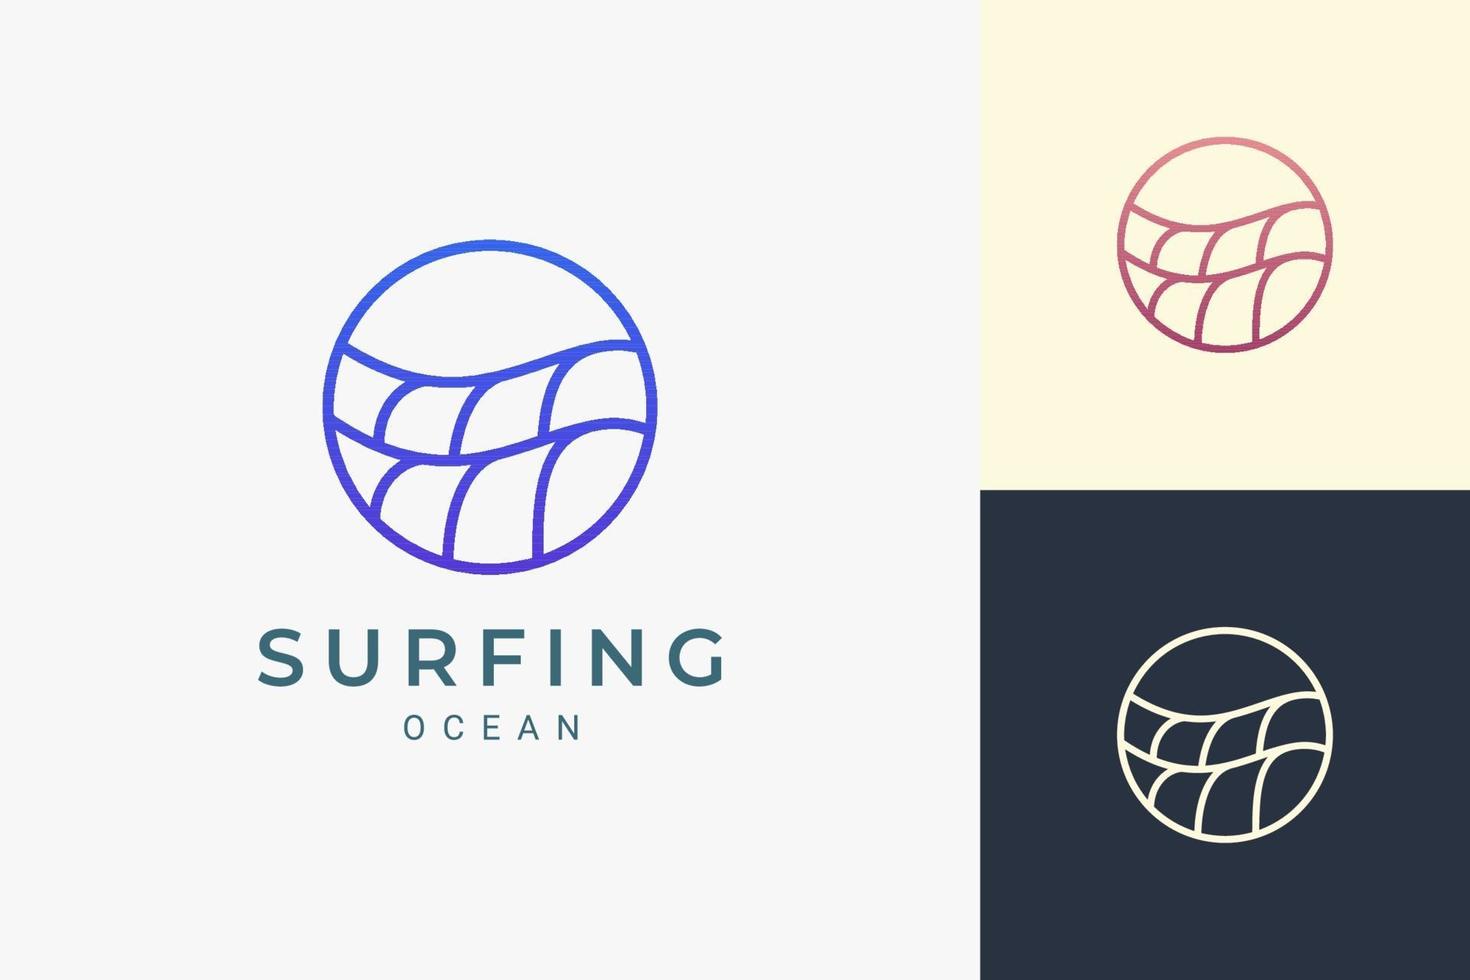 logotipo do tema marinho ou aquático em forma de círculo simples de ondas do oceano vetor